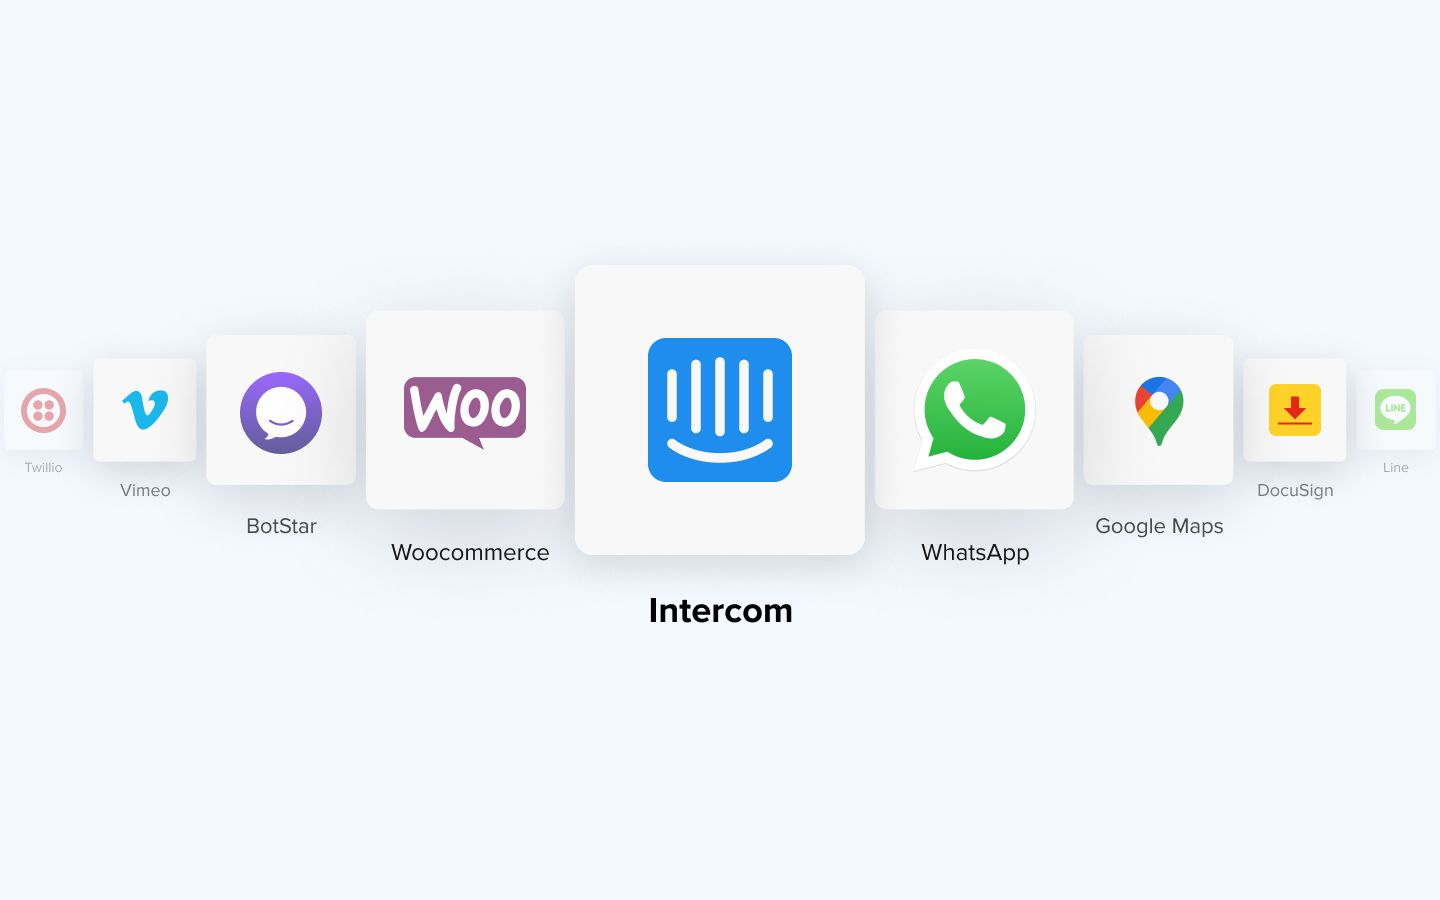 App Highlights: Intercom